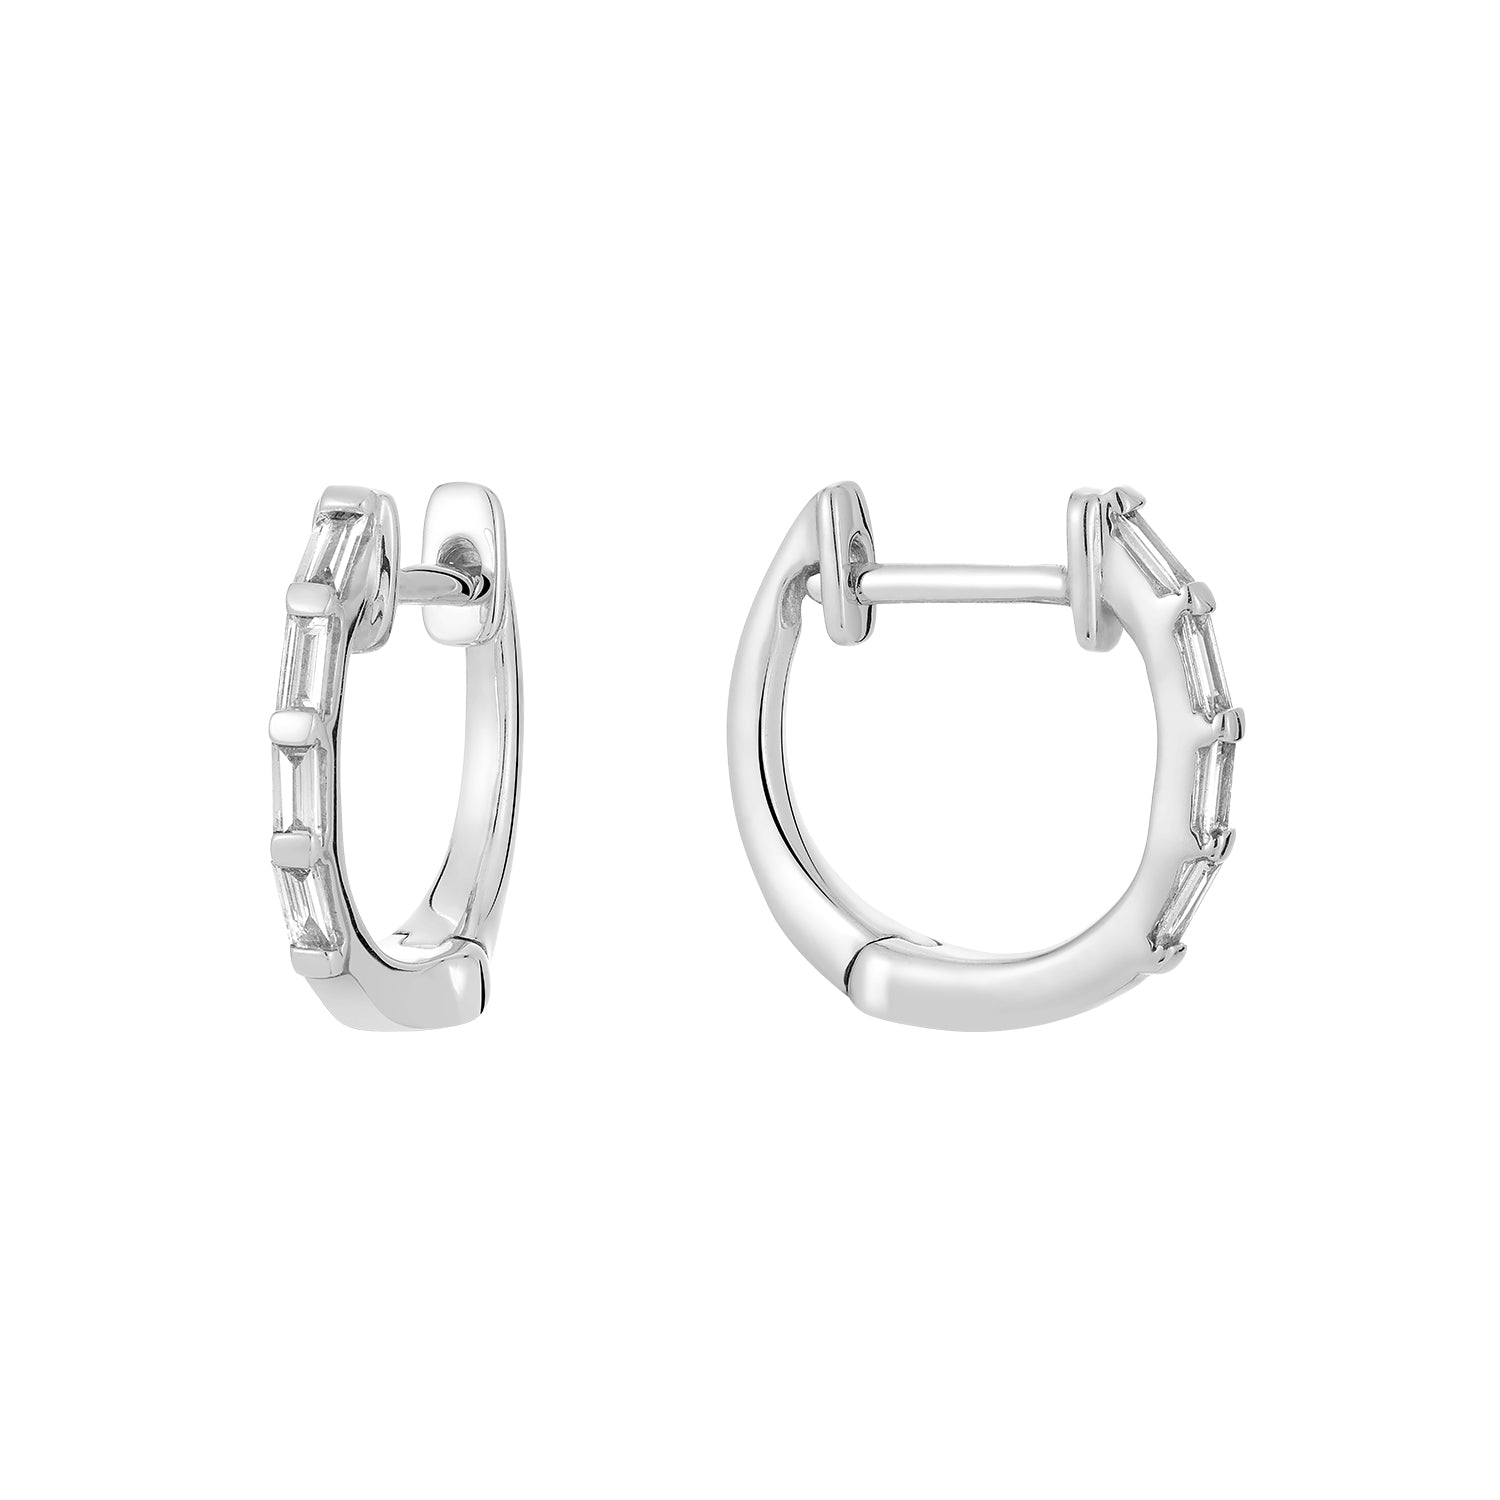 Hemsleys Collection 14K Baguette Diamond Mini Huggy Hoop Earrings